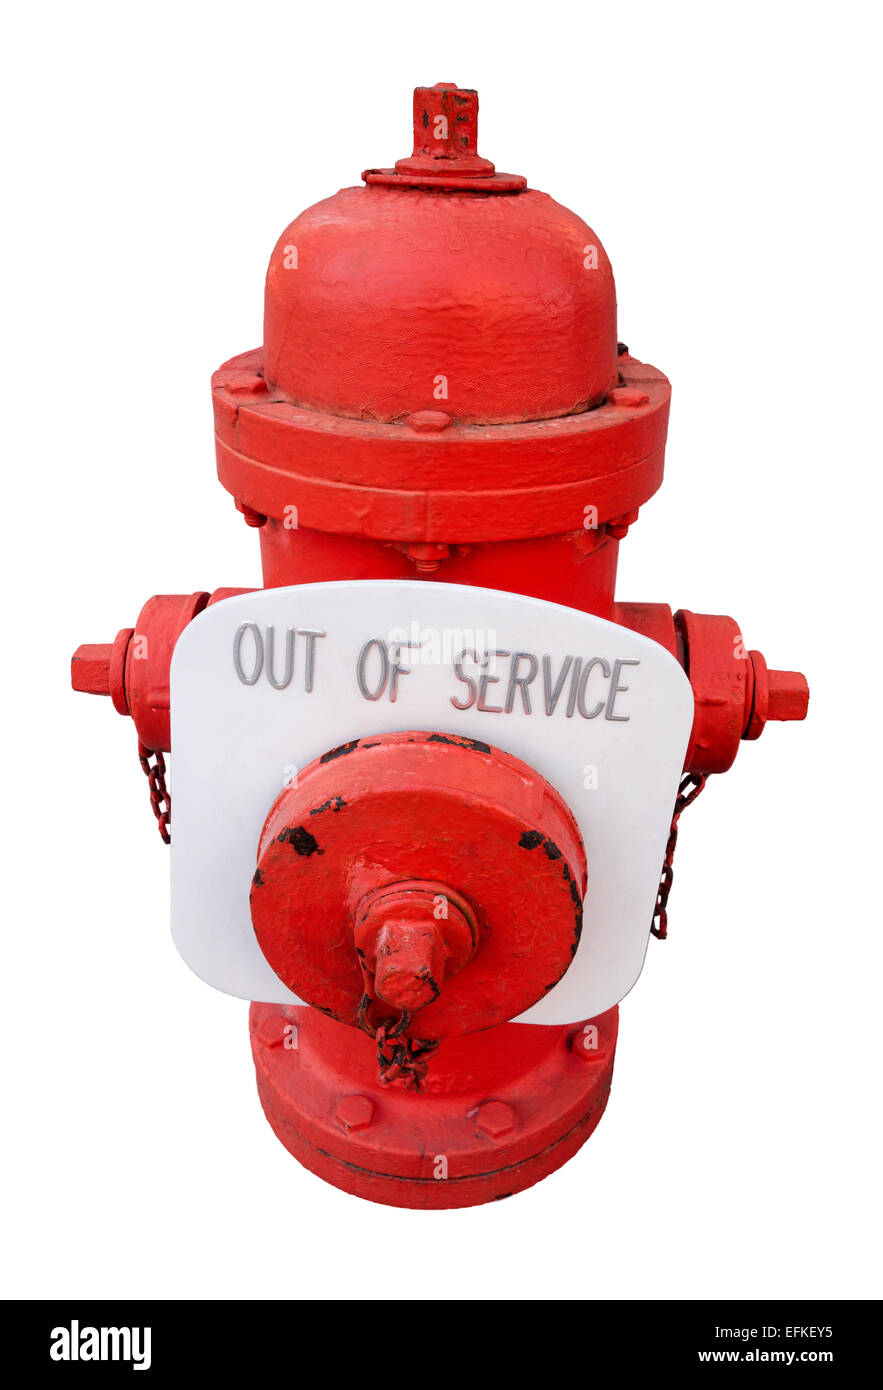 Rot uns Hydranten mit aus Service-Zeichen; funktioniert nicht, gebrochen, unsicher, unzuverlässig Feuer-Stecker. Sicherheitsproblem, Sorge. Stockfoto